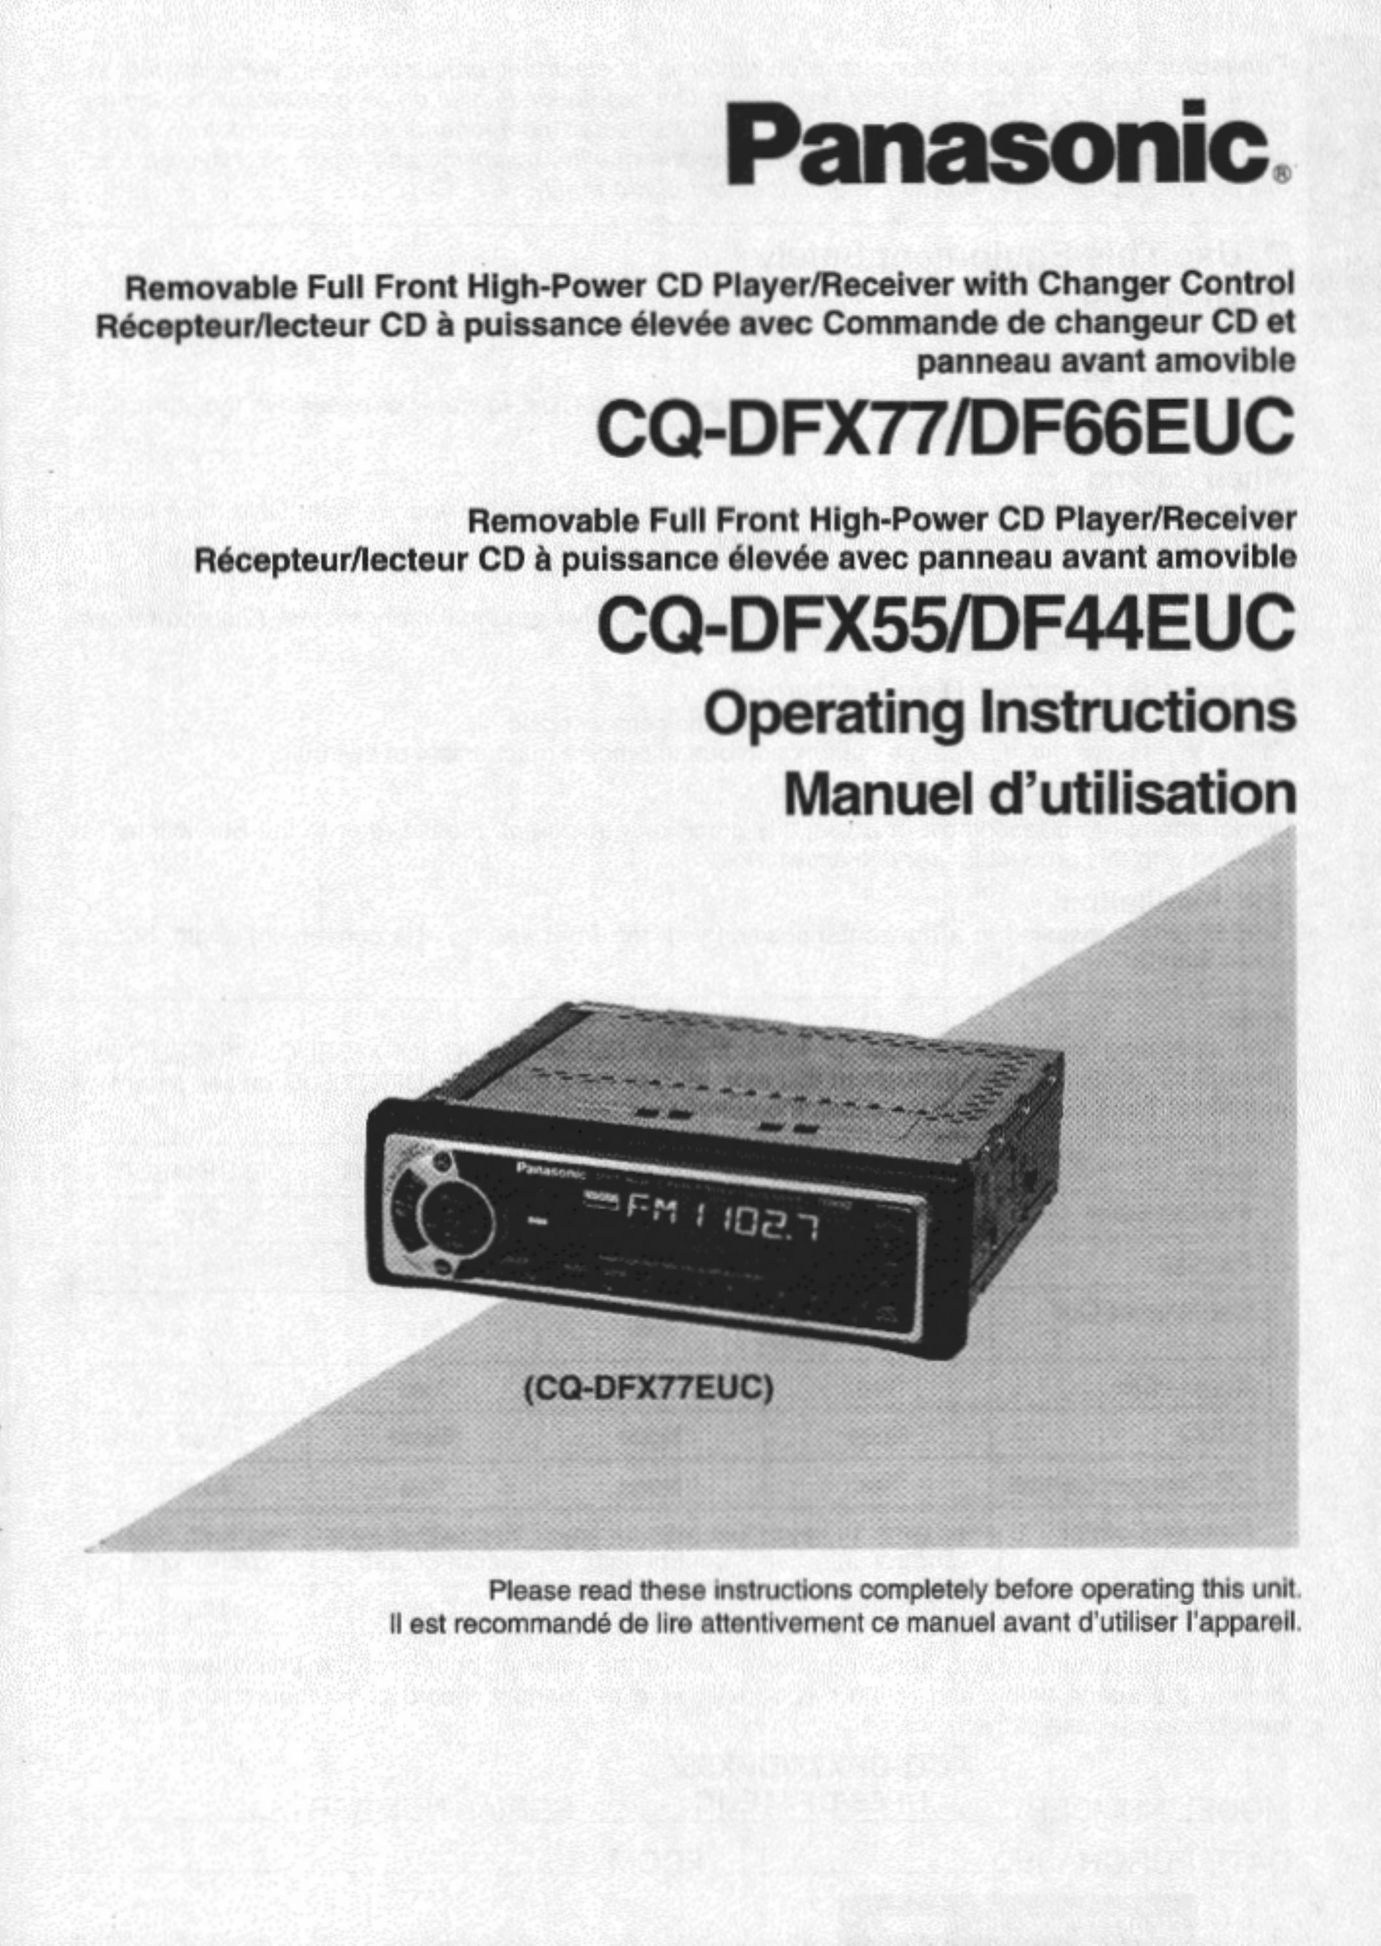 Panasonic CQ-DFX77 CD Player User Manual